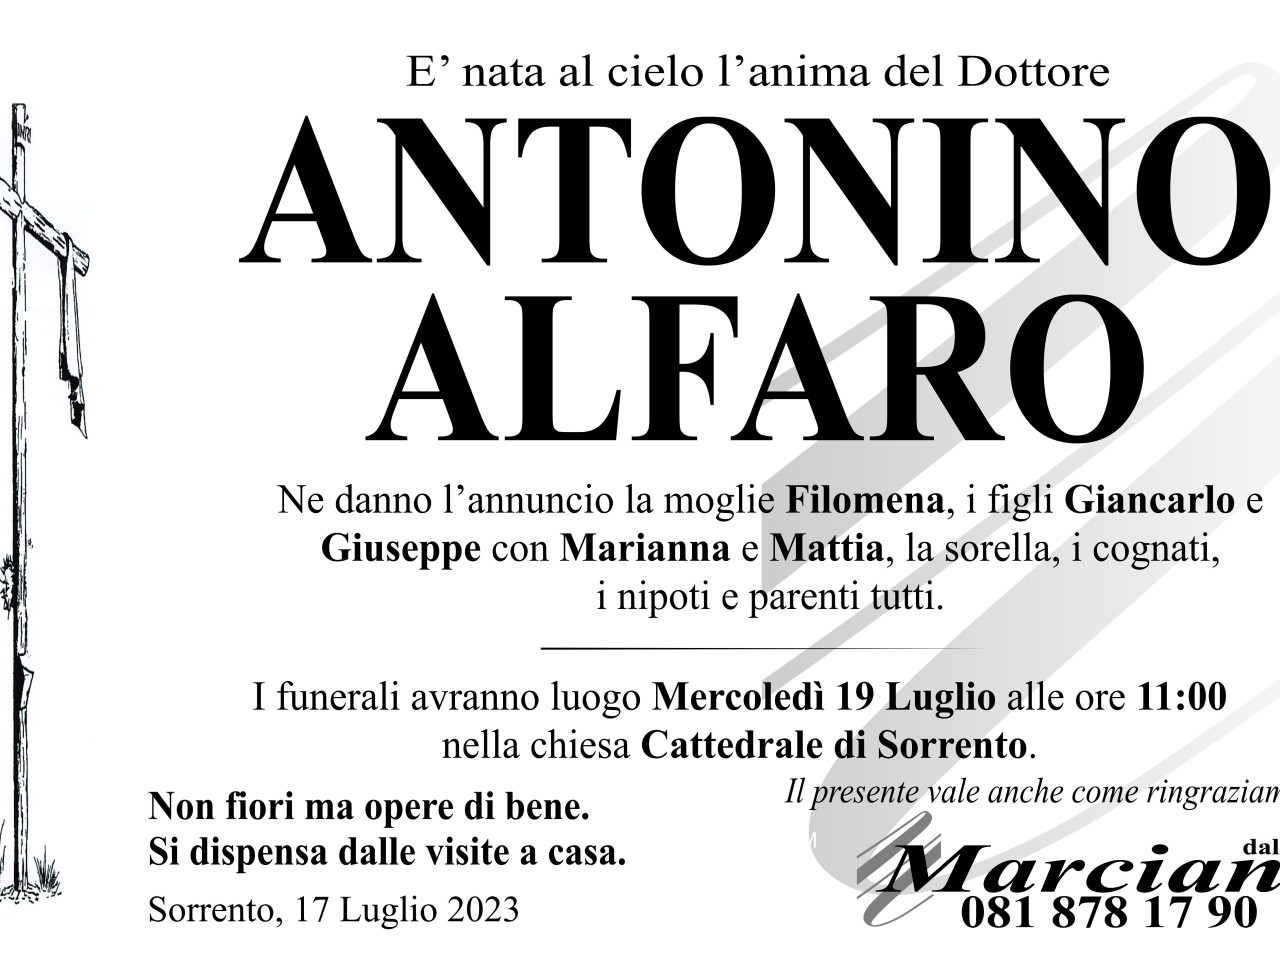 Antonino Alfaro